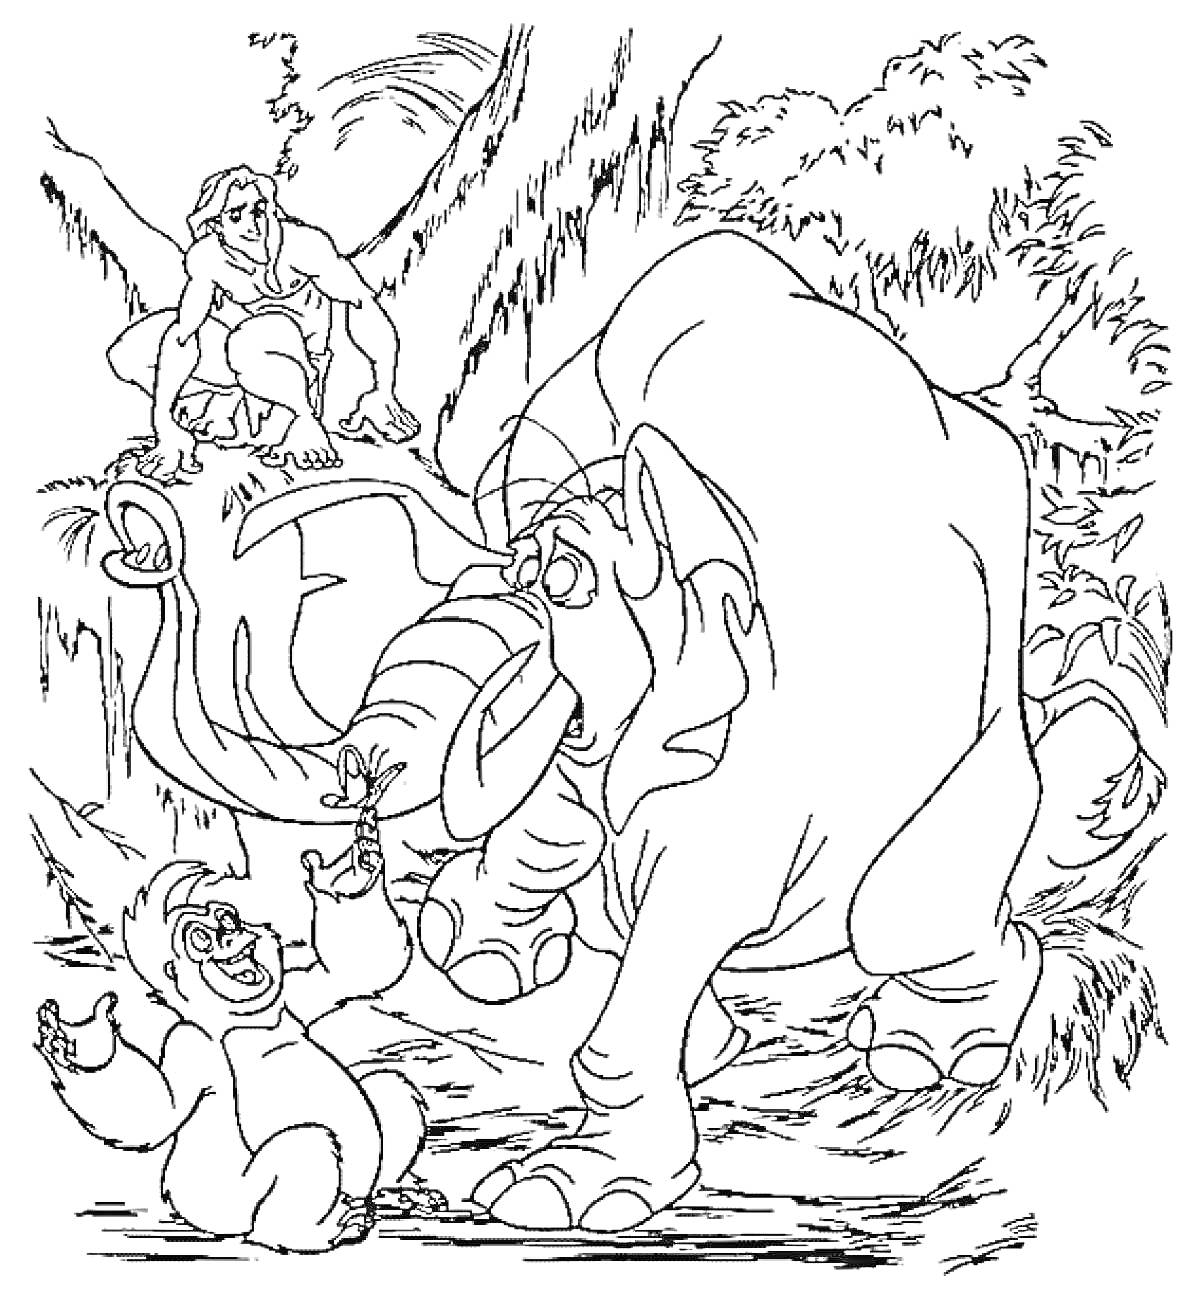 Тарзан, слон, горилла на джунглевом фоне